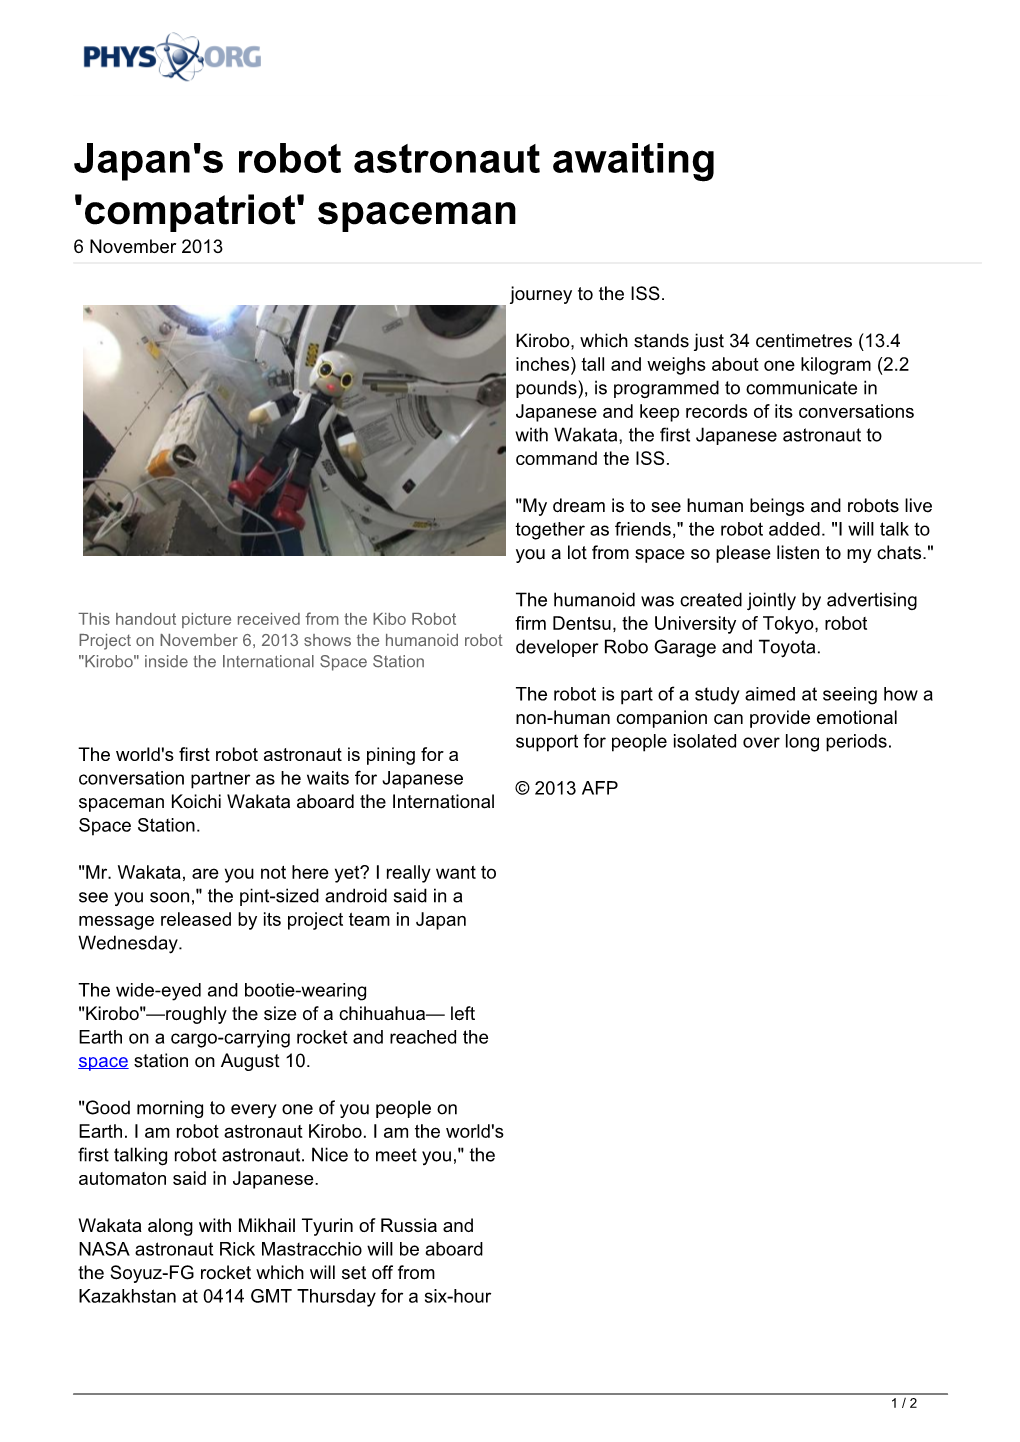 Japan's Robot Astronaut Awaiting 'Compatriot' Spaceman 6 November 2013